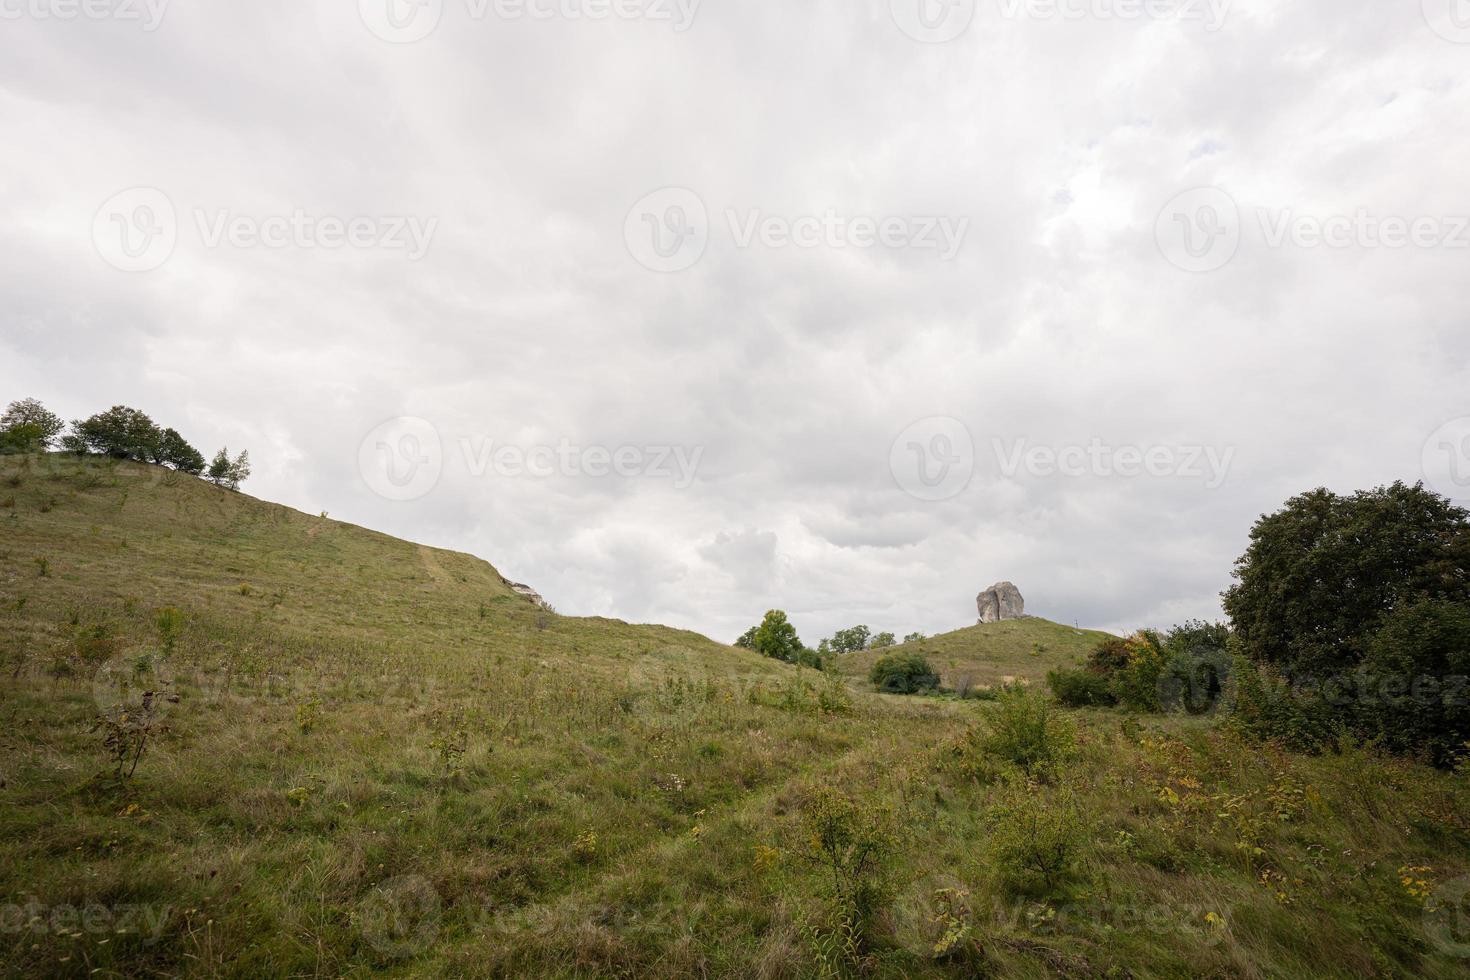 pedra pidkamin inselberg na paisagem de colina. Ucrânia. foto